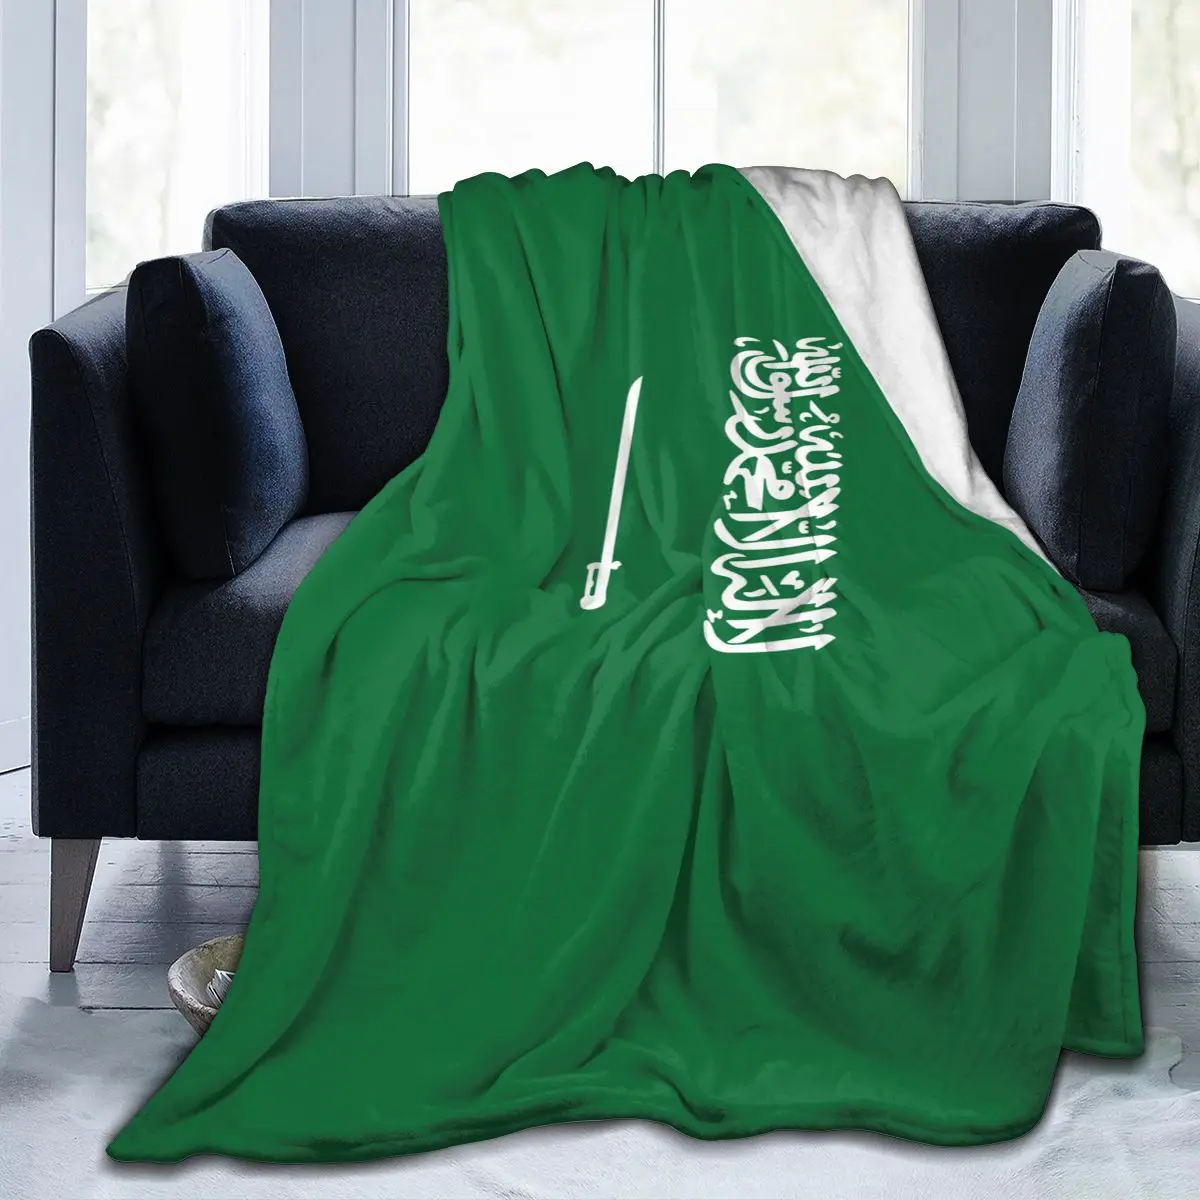 

Мягкое теплое Флисовое одеяло с флагом Саудовской Аравии, зимнее покрывало для дивана, 3 размера, легкое тонкое фланелевое одеяло механичес...